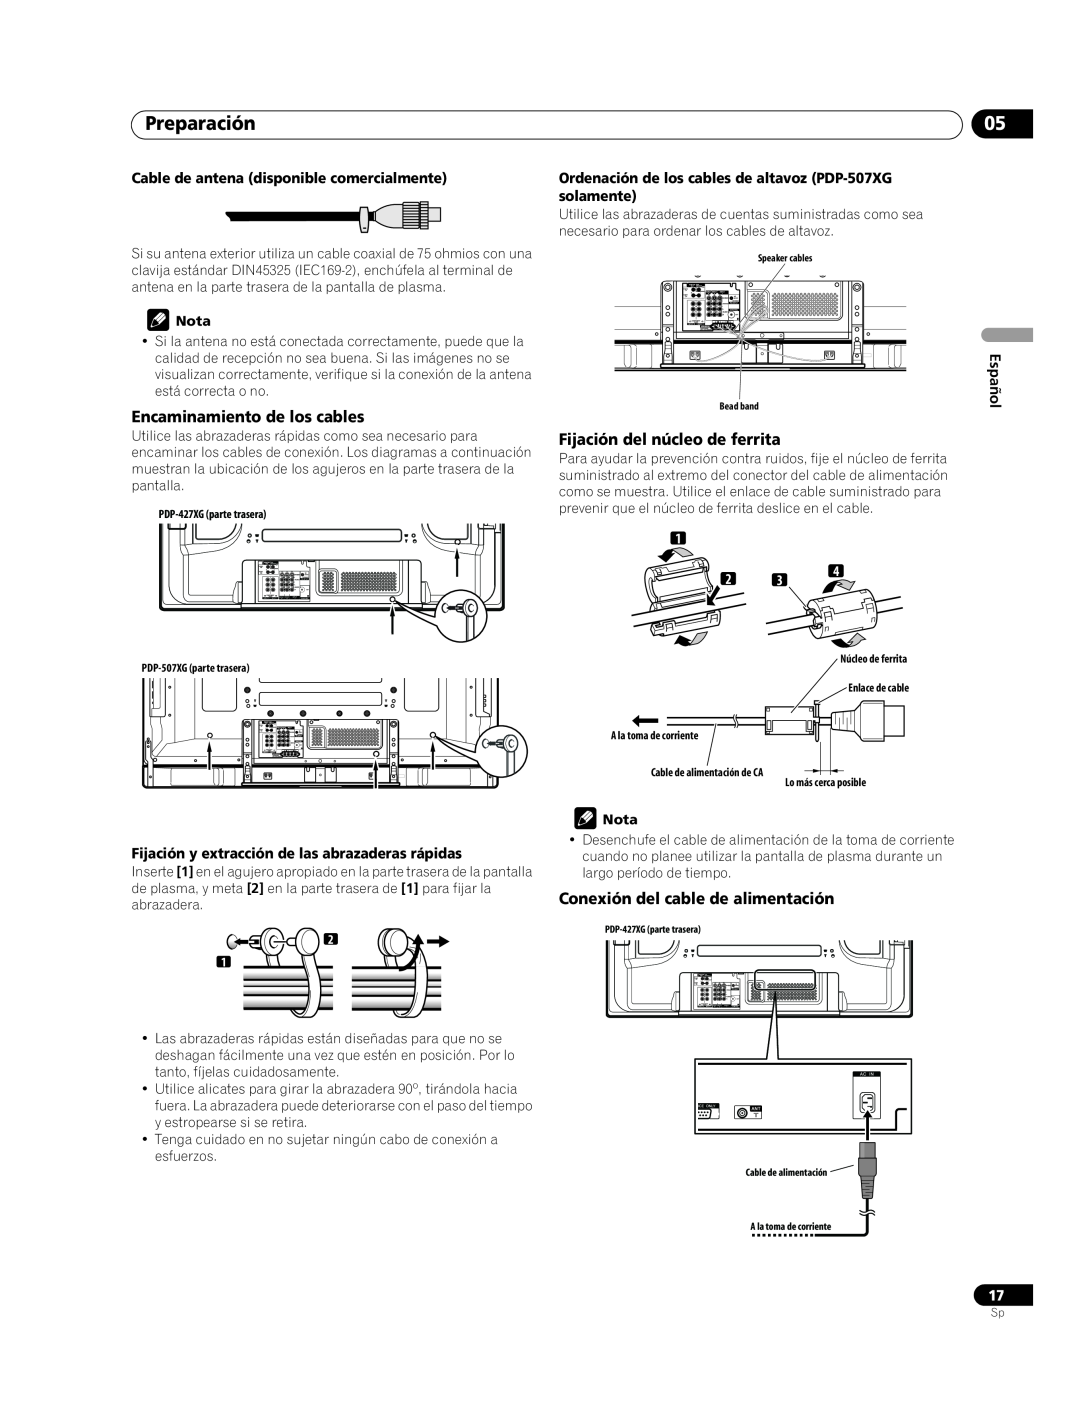 Pioneer PDP-507XG, PDP-427XG manual Preparación, Encaminamiento de los cables, Fijación del núcleo de ferrita, Español 